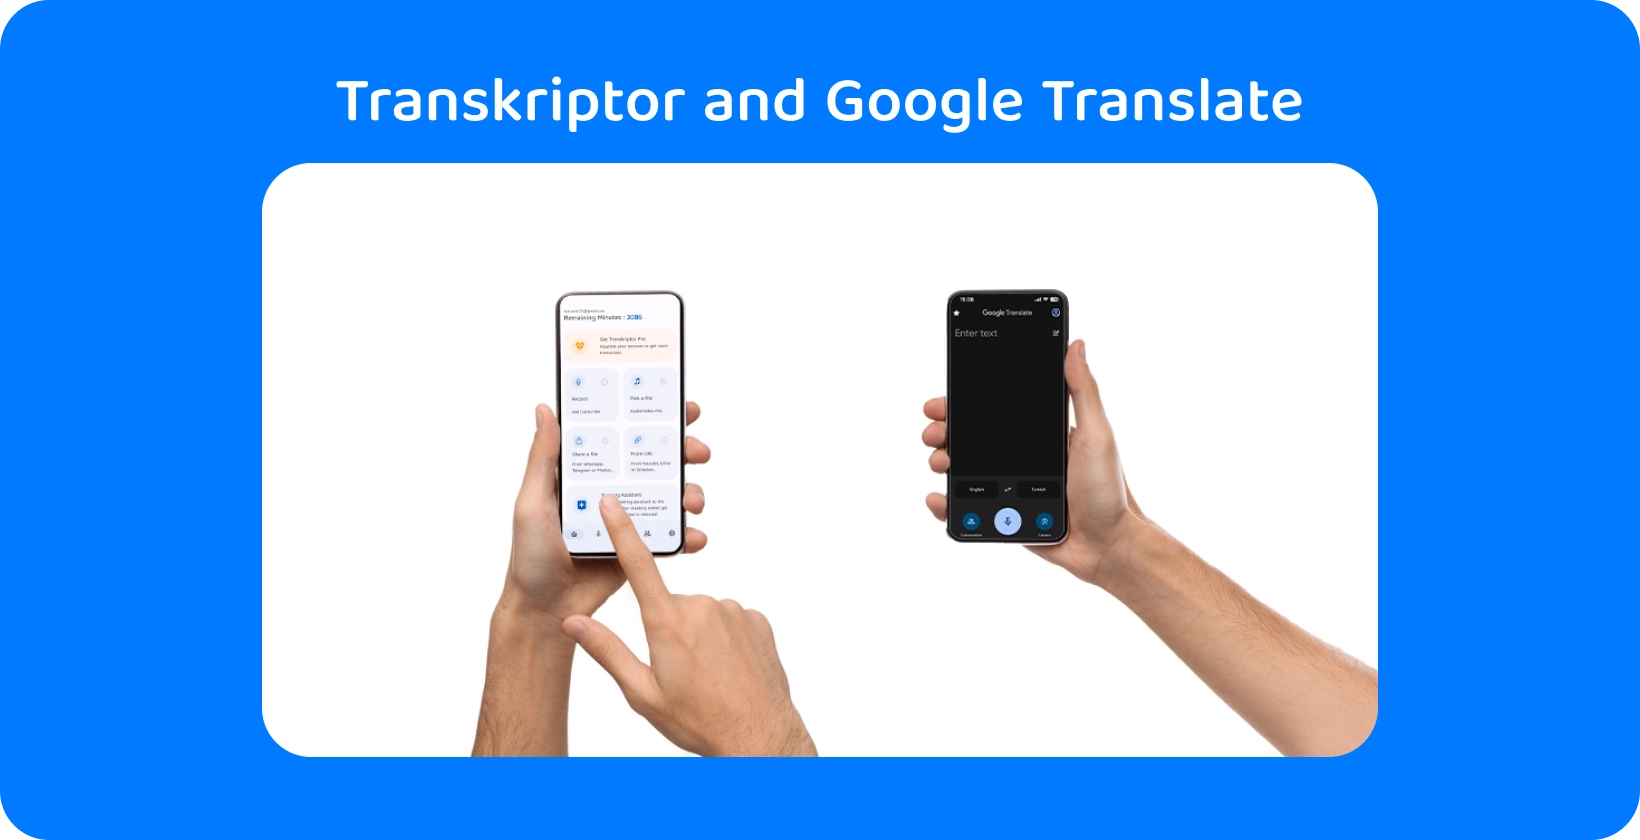 สองมือถือสมาร์ทโฟนพร้อม Transkriptor และ Google Translate สาธิตการถอดเสียงและการแปล